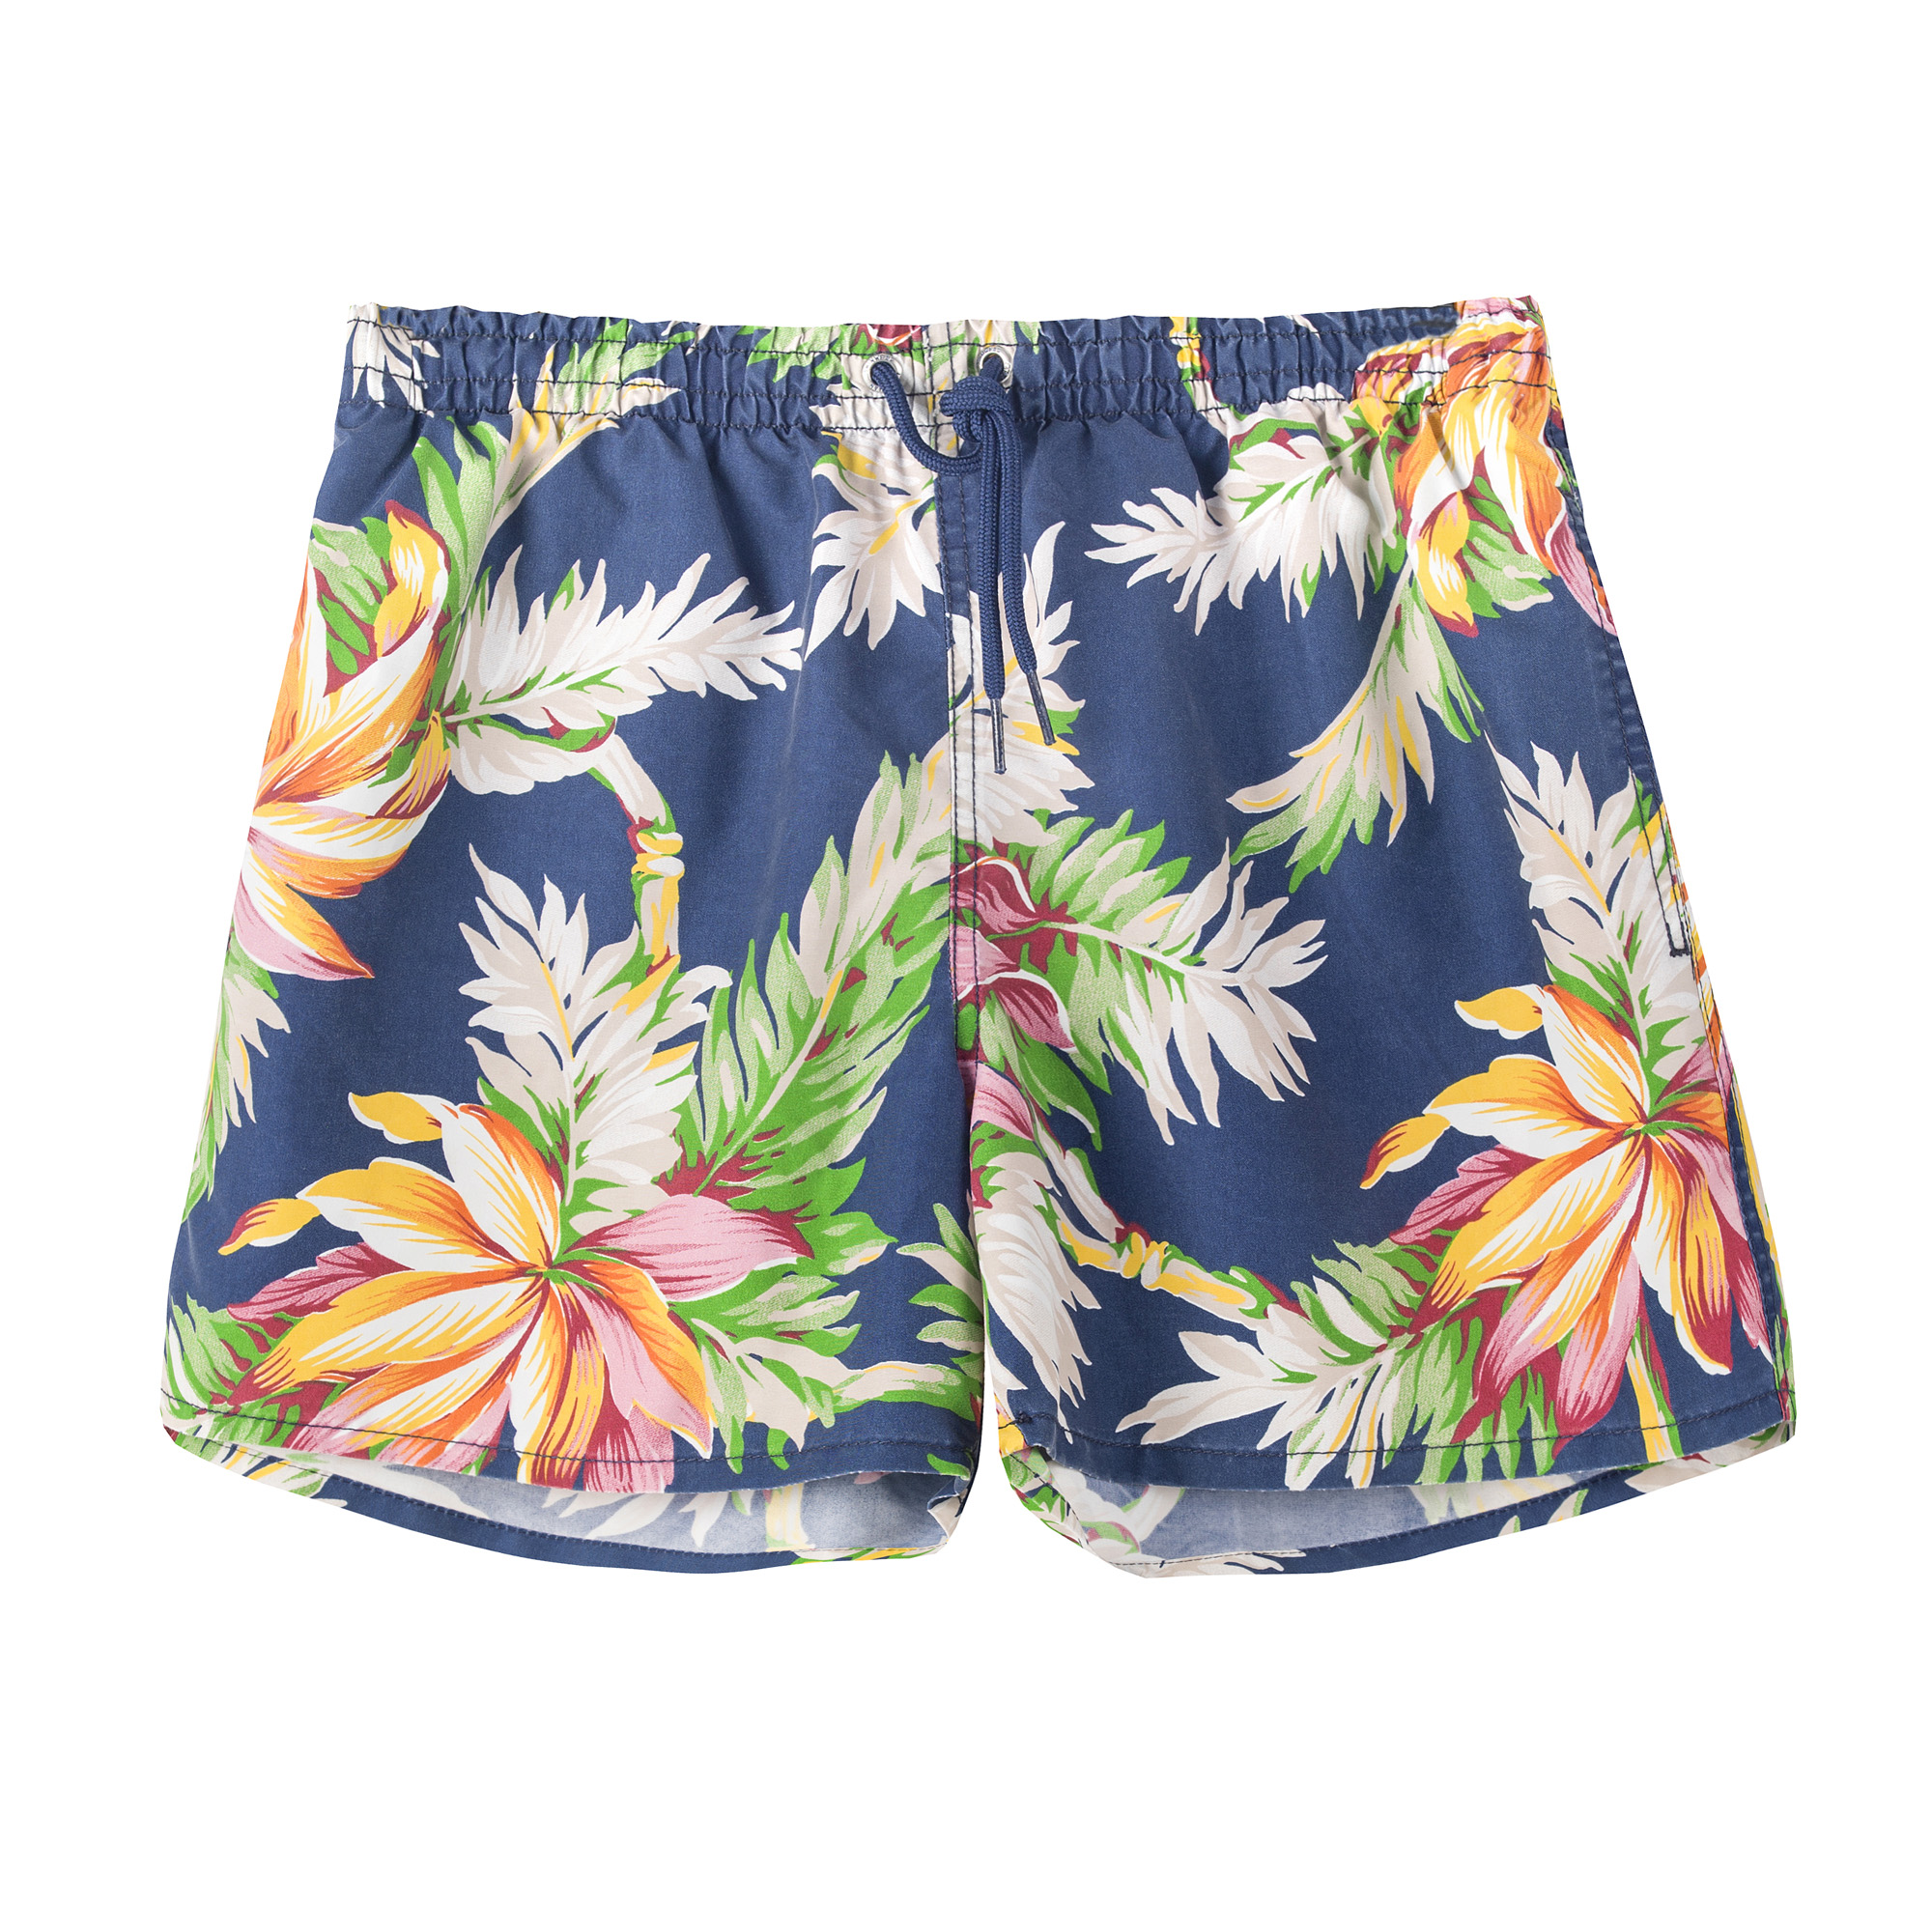 Floral Swim Shorts R 379, Zara - Mr Doveton